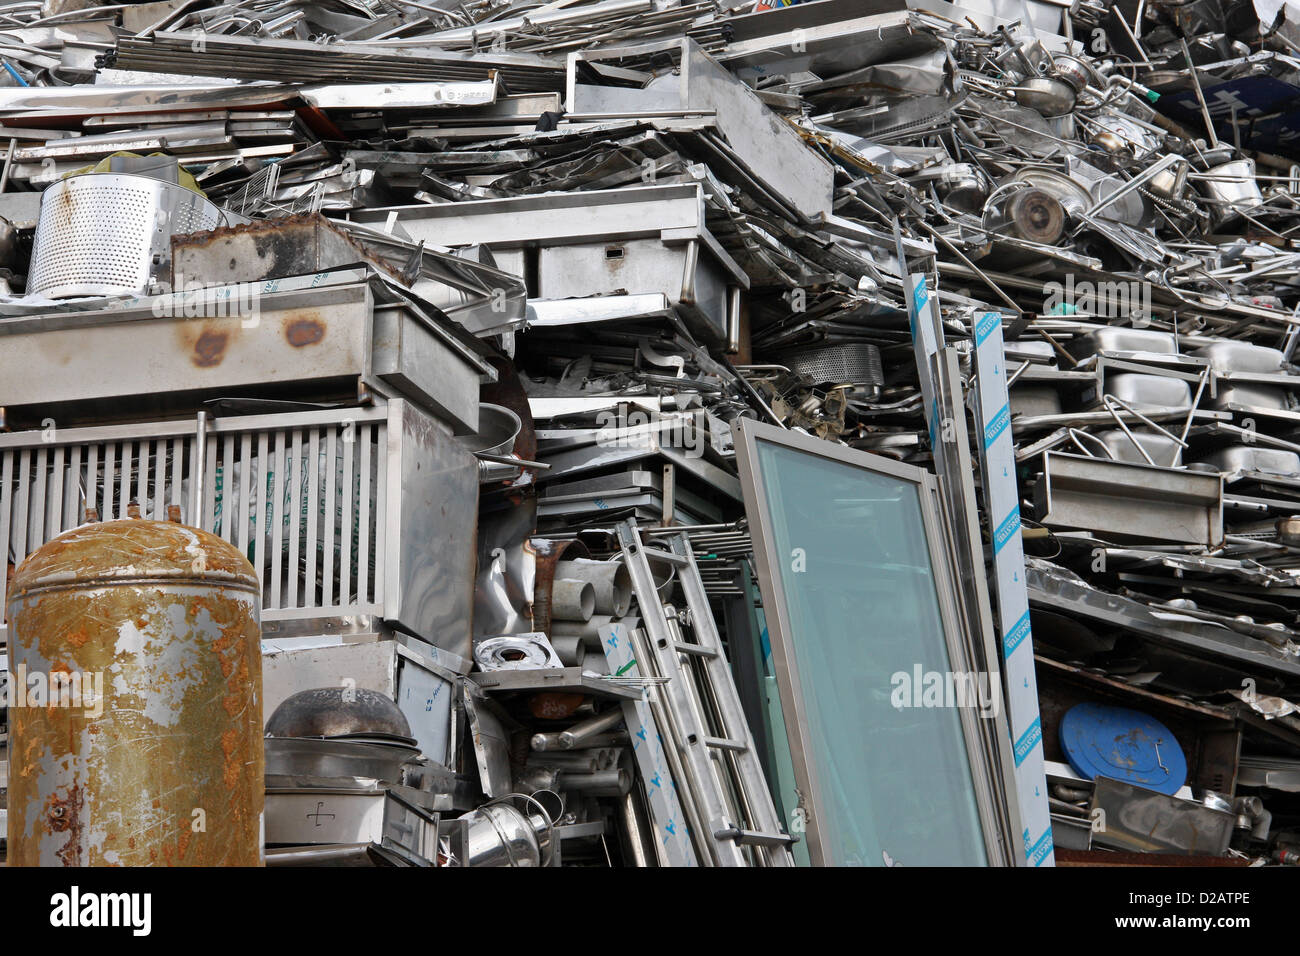 Scrapyard in Jeonju, South Korea Stock Photo